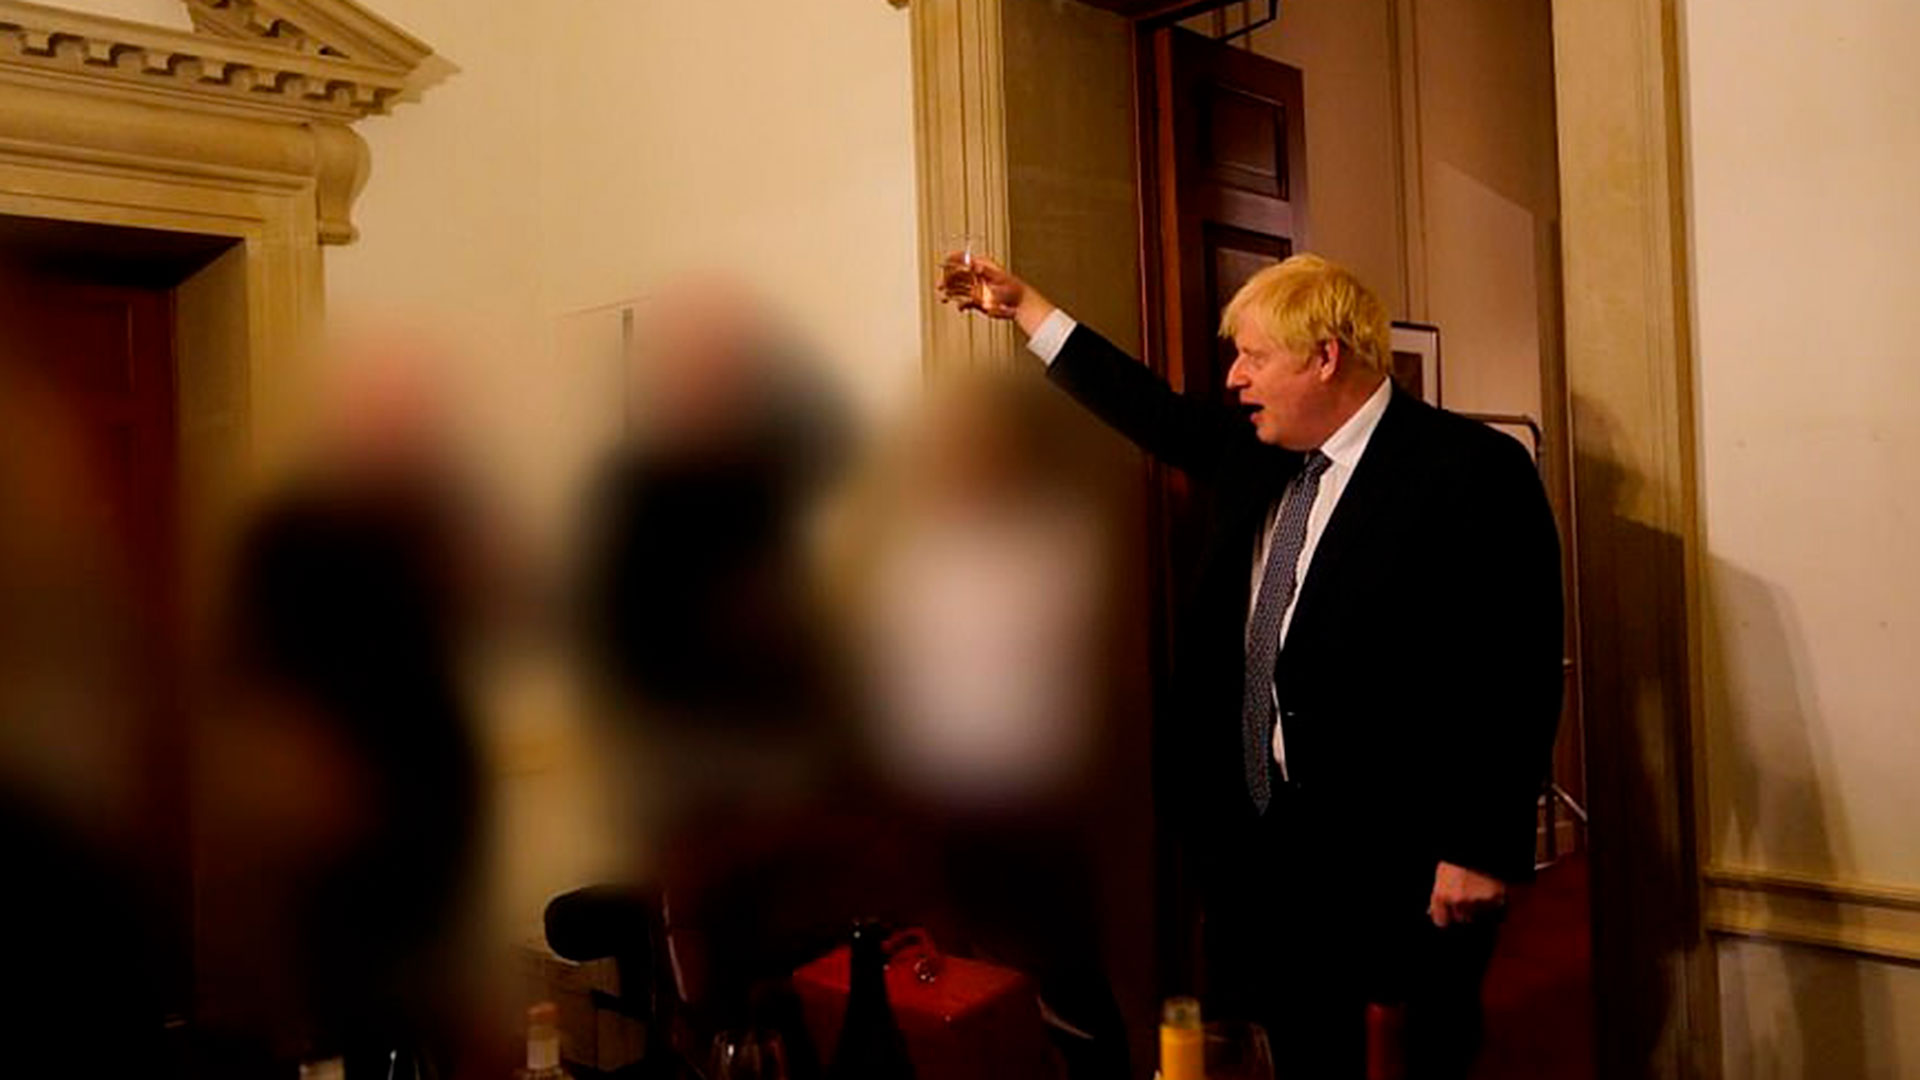 13 de noviembre de 2020: una reunión en el N10 de Downing Street tras la salida de un consejero especializado en medio del confinamiento por el covid-19.
